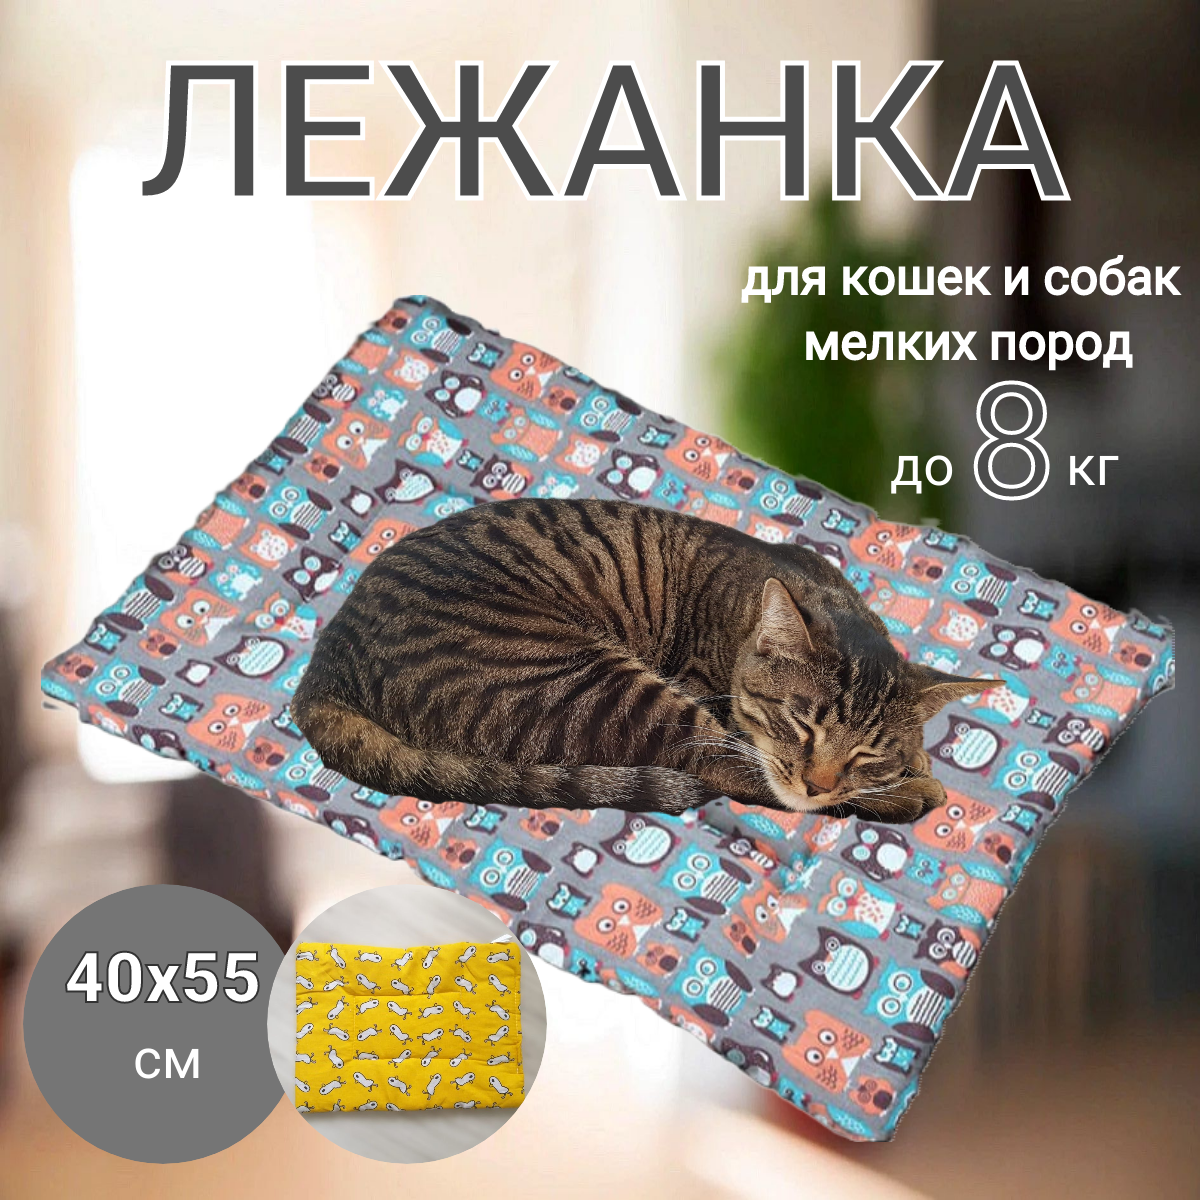 Лежанка подстилка для кошек и собак мелких пород животных; подстилка коврик 40 х 55 см